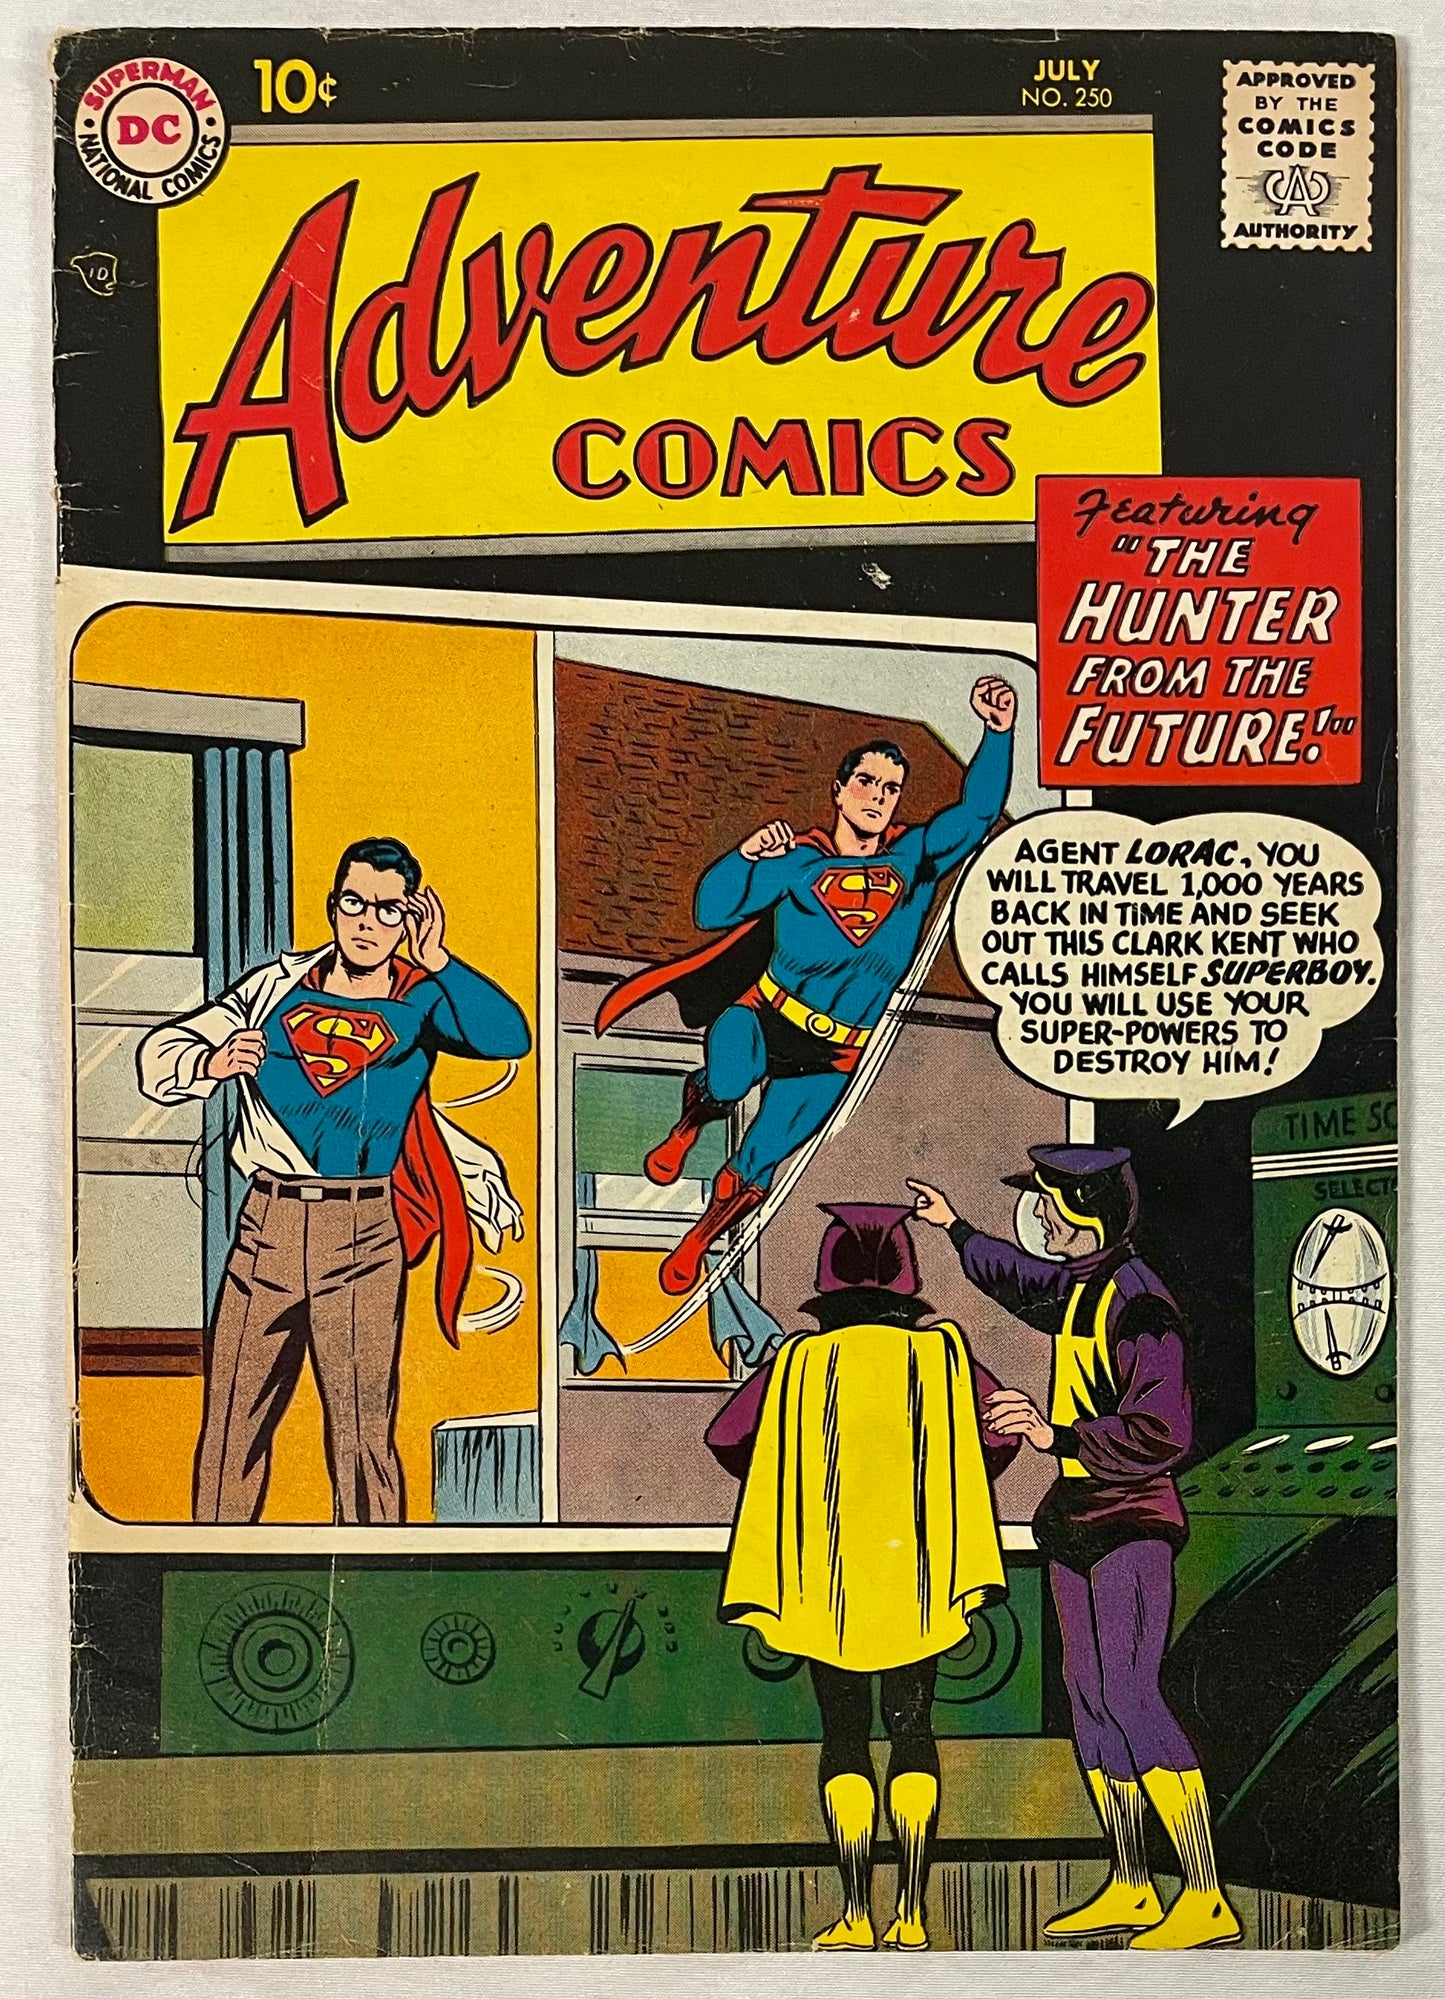 DC Comics Adventure Comics No. 250